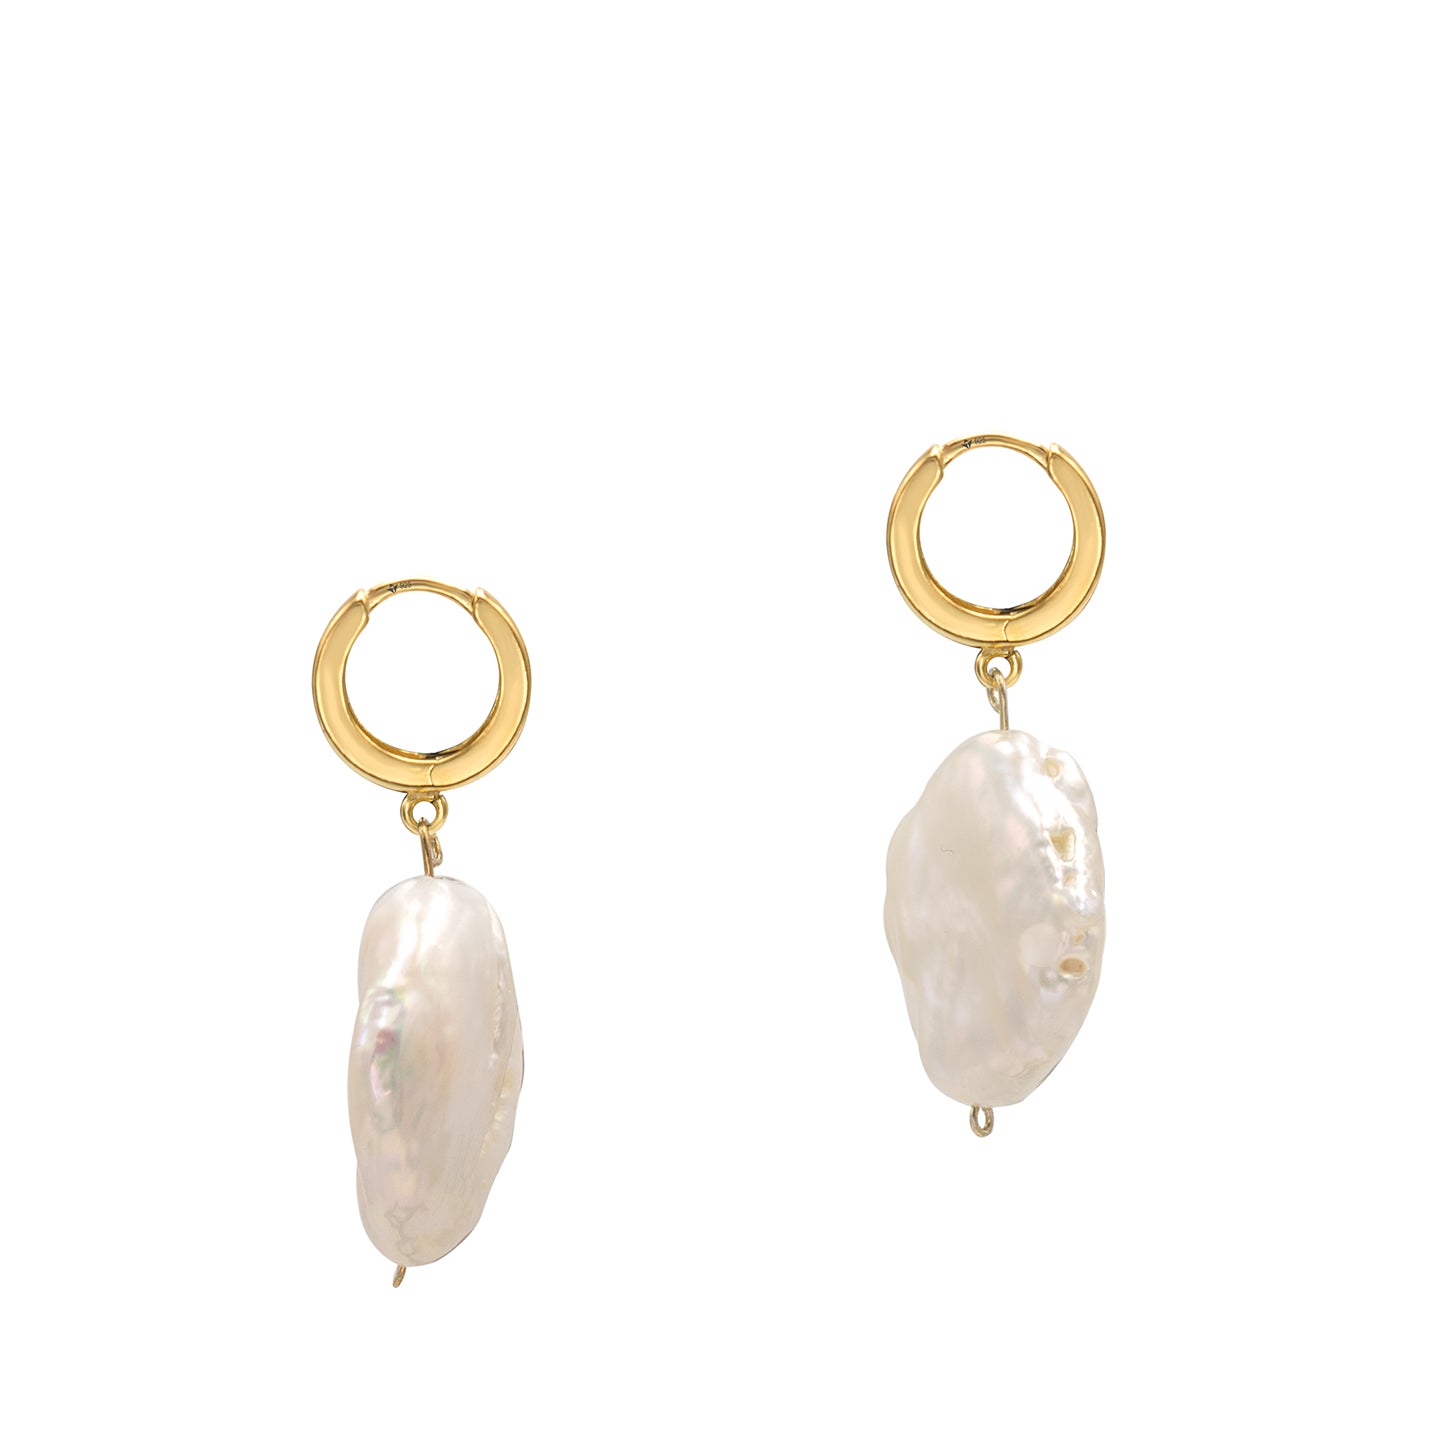 Cercei argint cu perle baroc Authentic Spirit - placati aur galben 18K